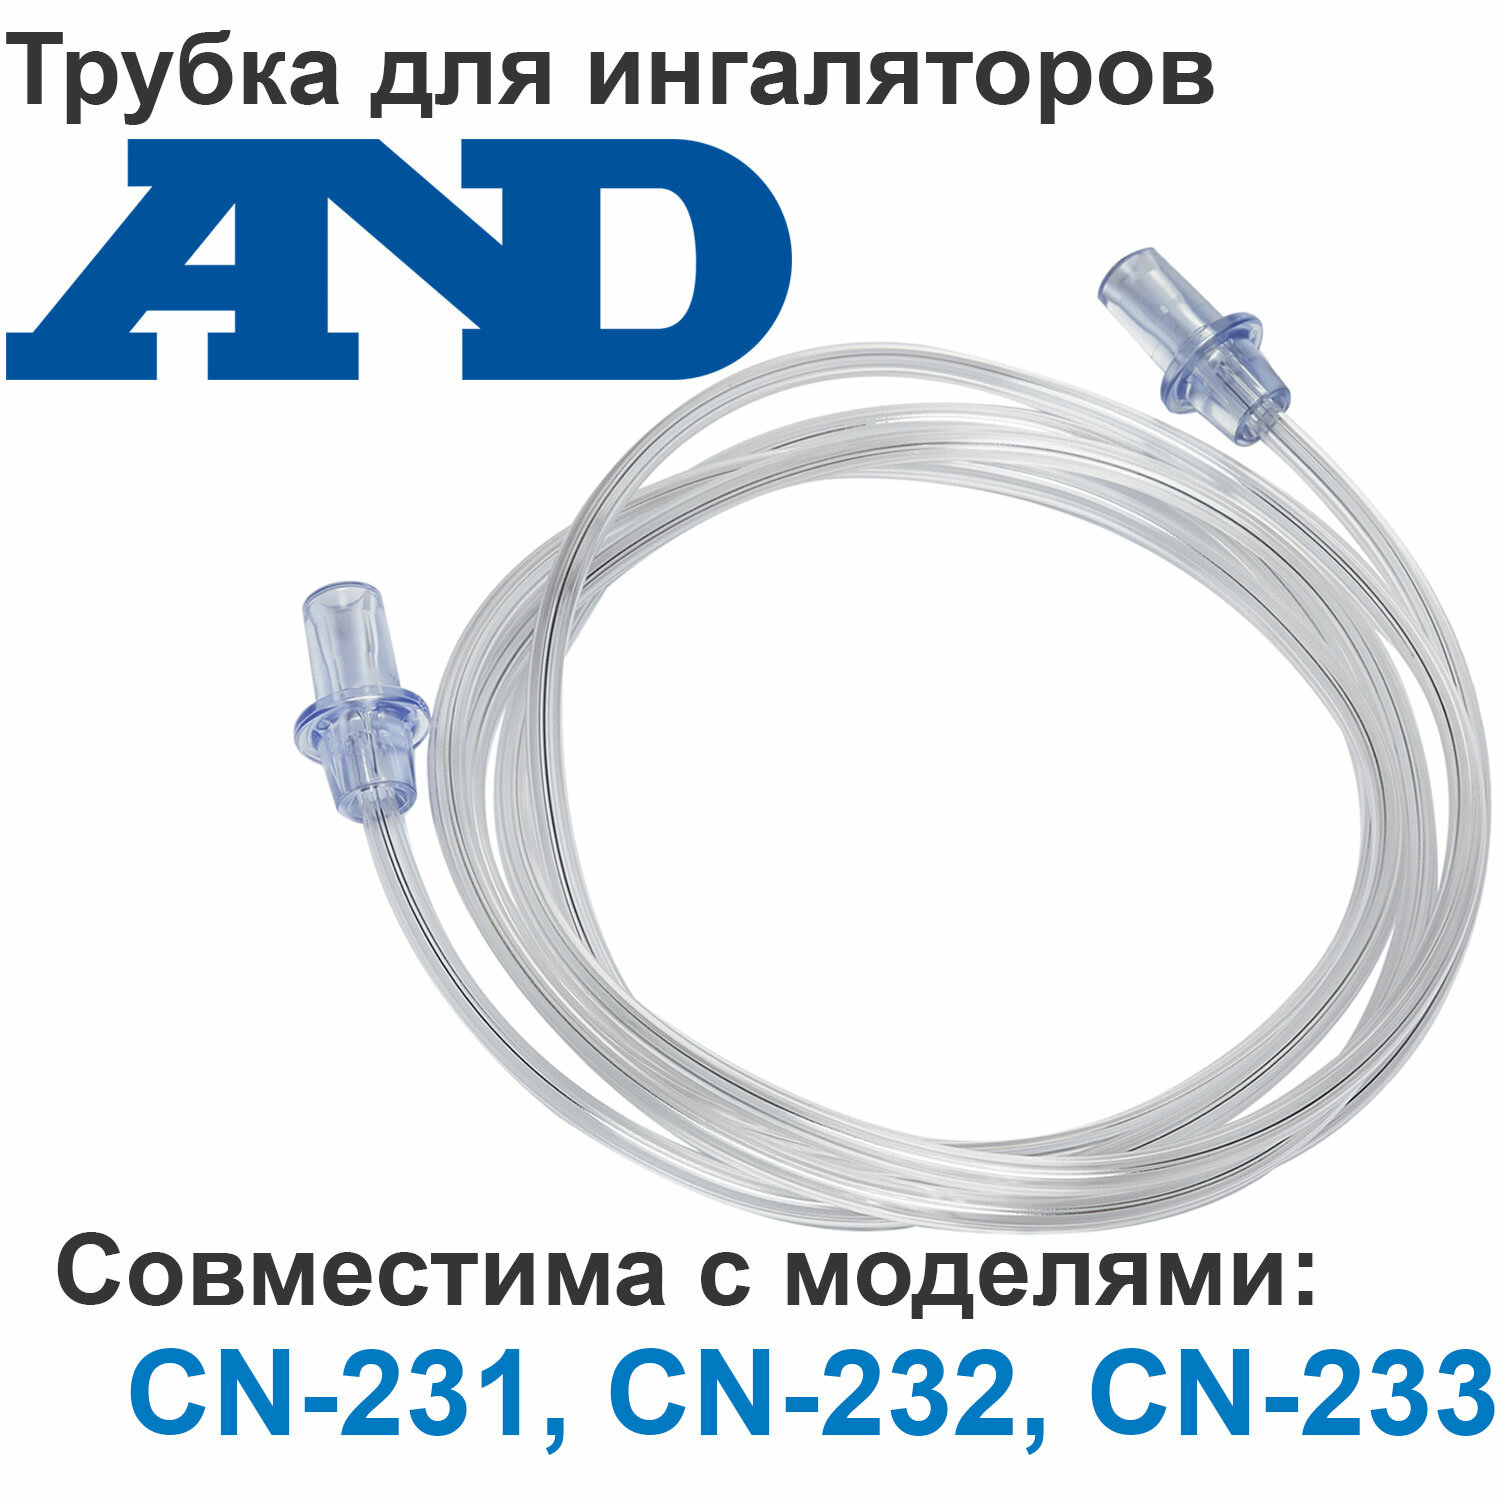 Трубка для ингаляторов AND CN-231, CN-232, CN-233 (воздуховодный шланг для небулайзеров АНД)